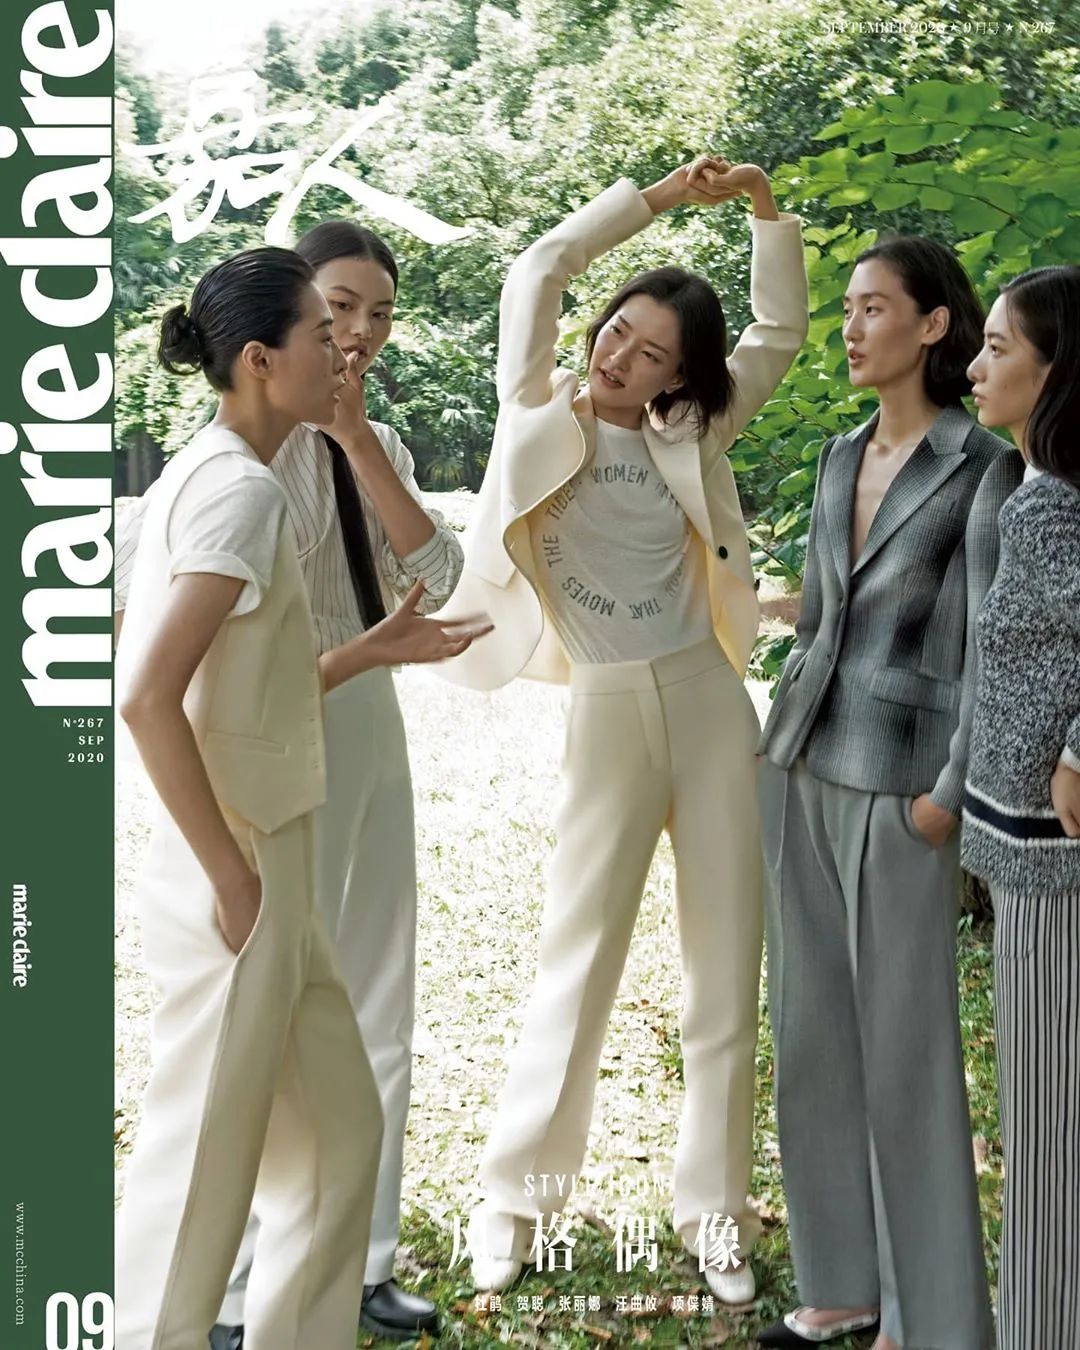 今年封面最有艺术感的中国时尚杂志，每一期封面都令人赏心悦目